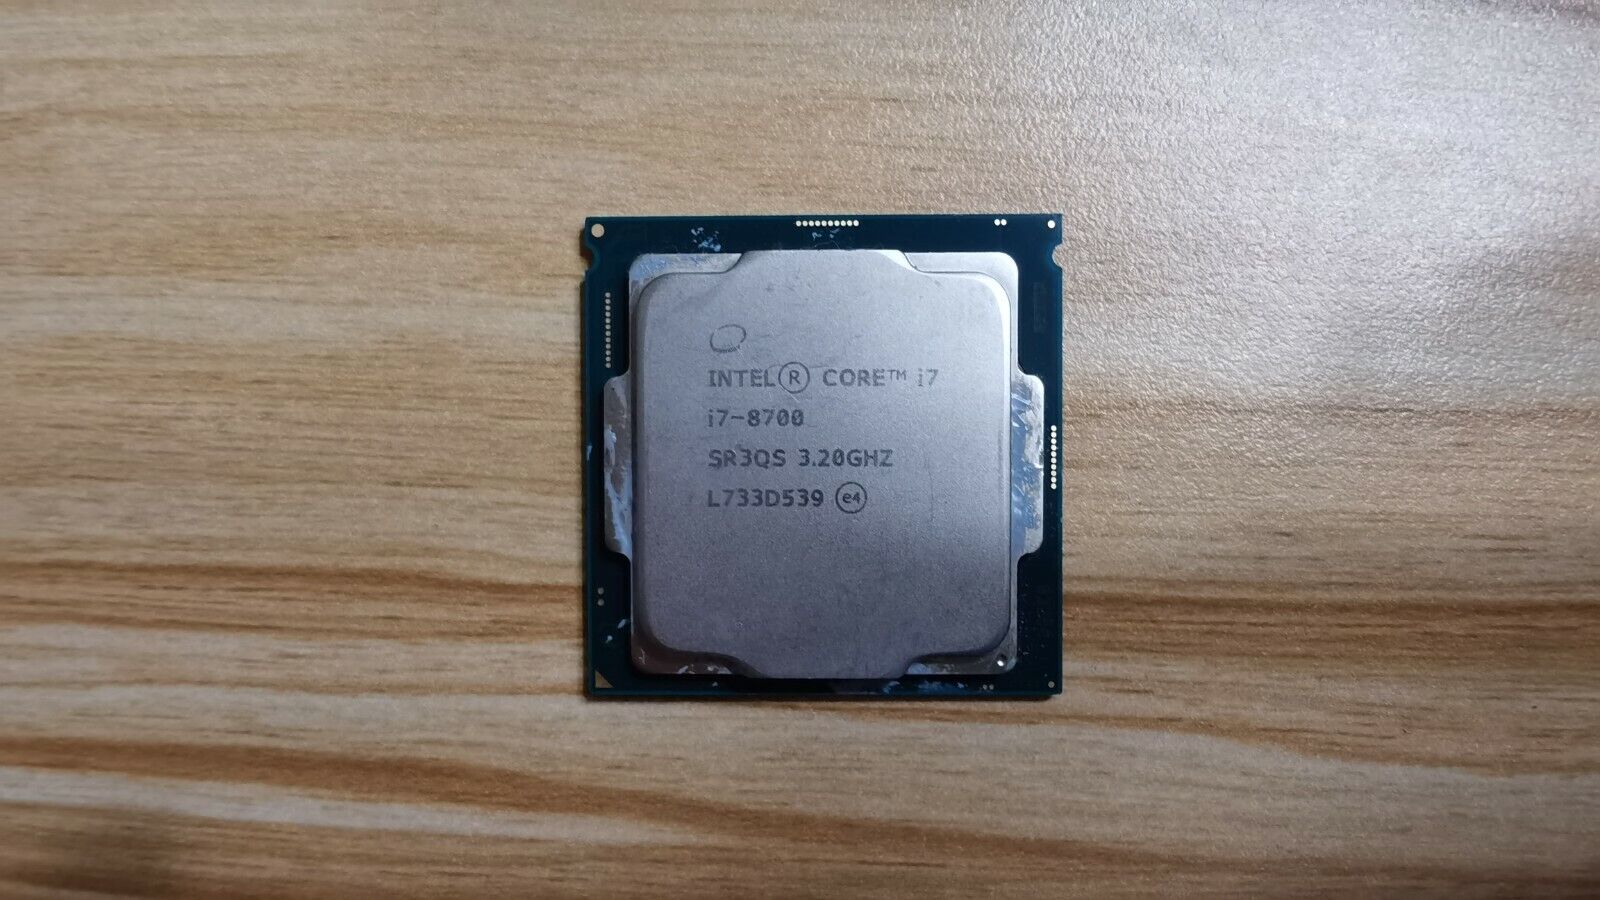 Intel Core SR3QS i7-8700 3.20Ghz 6 Cores 12MB LGA1151 CPU Processor